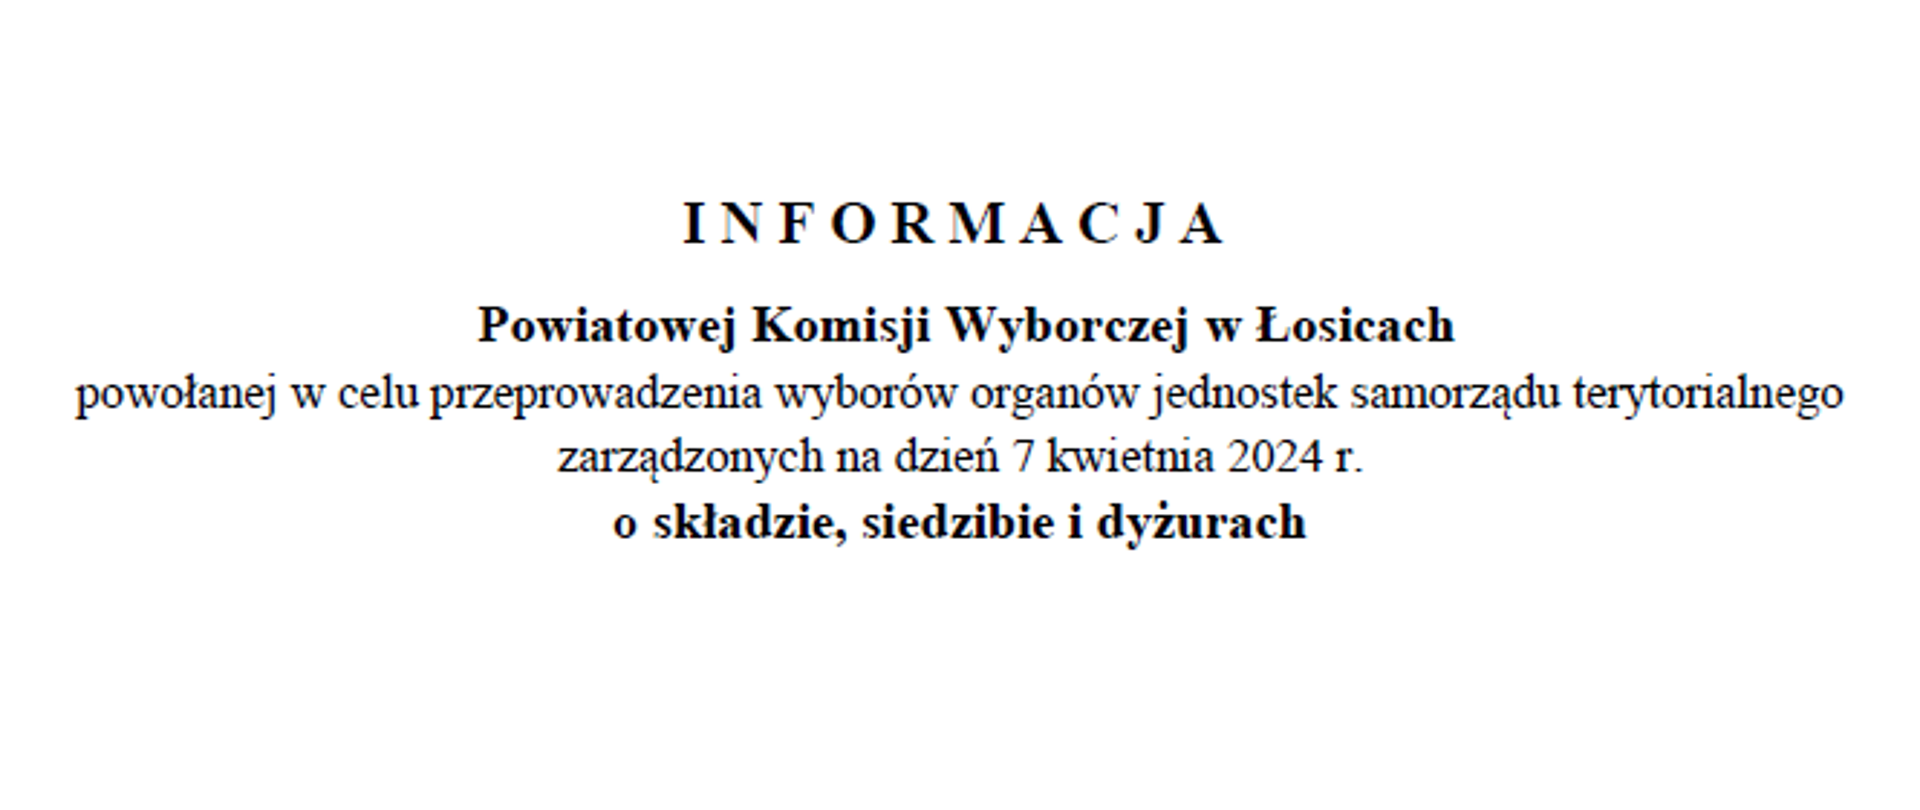 Informacja PKW w Łosicach